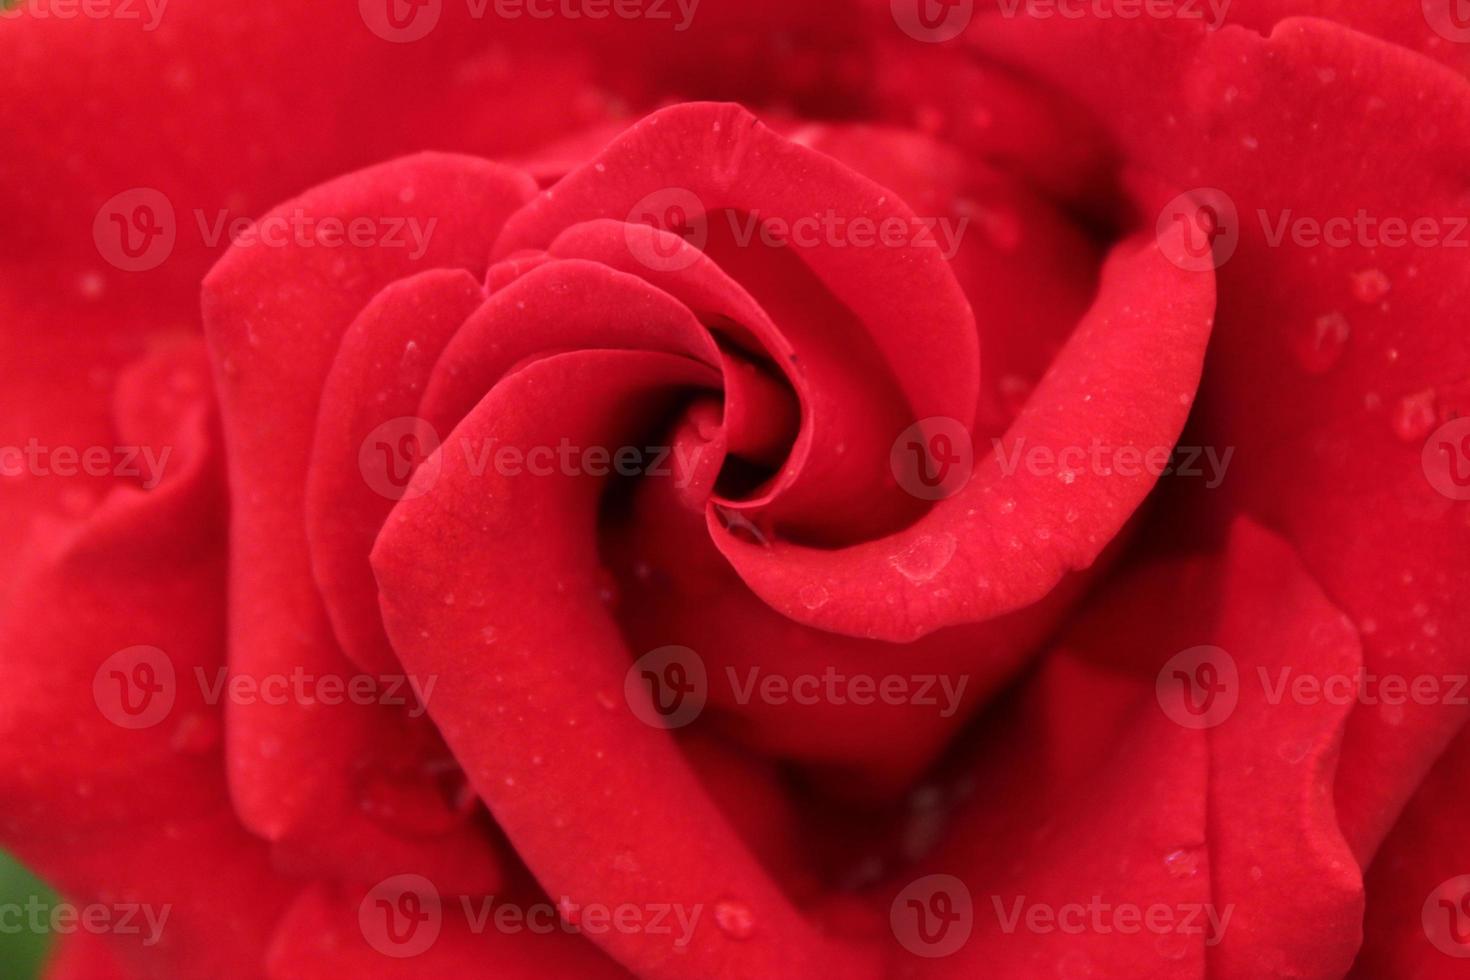 dichtbij omhoog van een roos bloem, roos, roos bloem, rood roos, roze roos foto